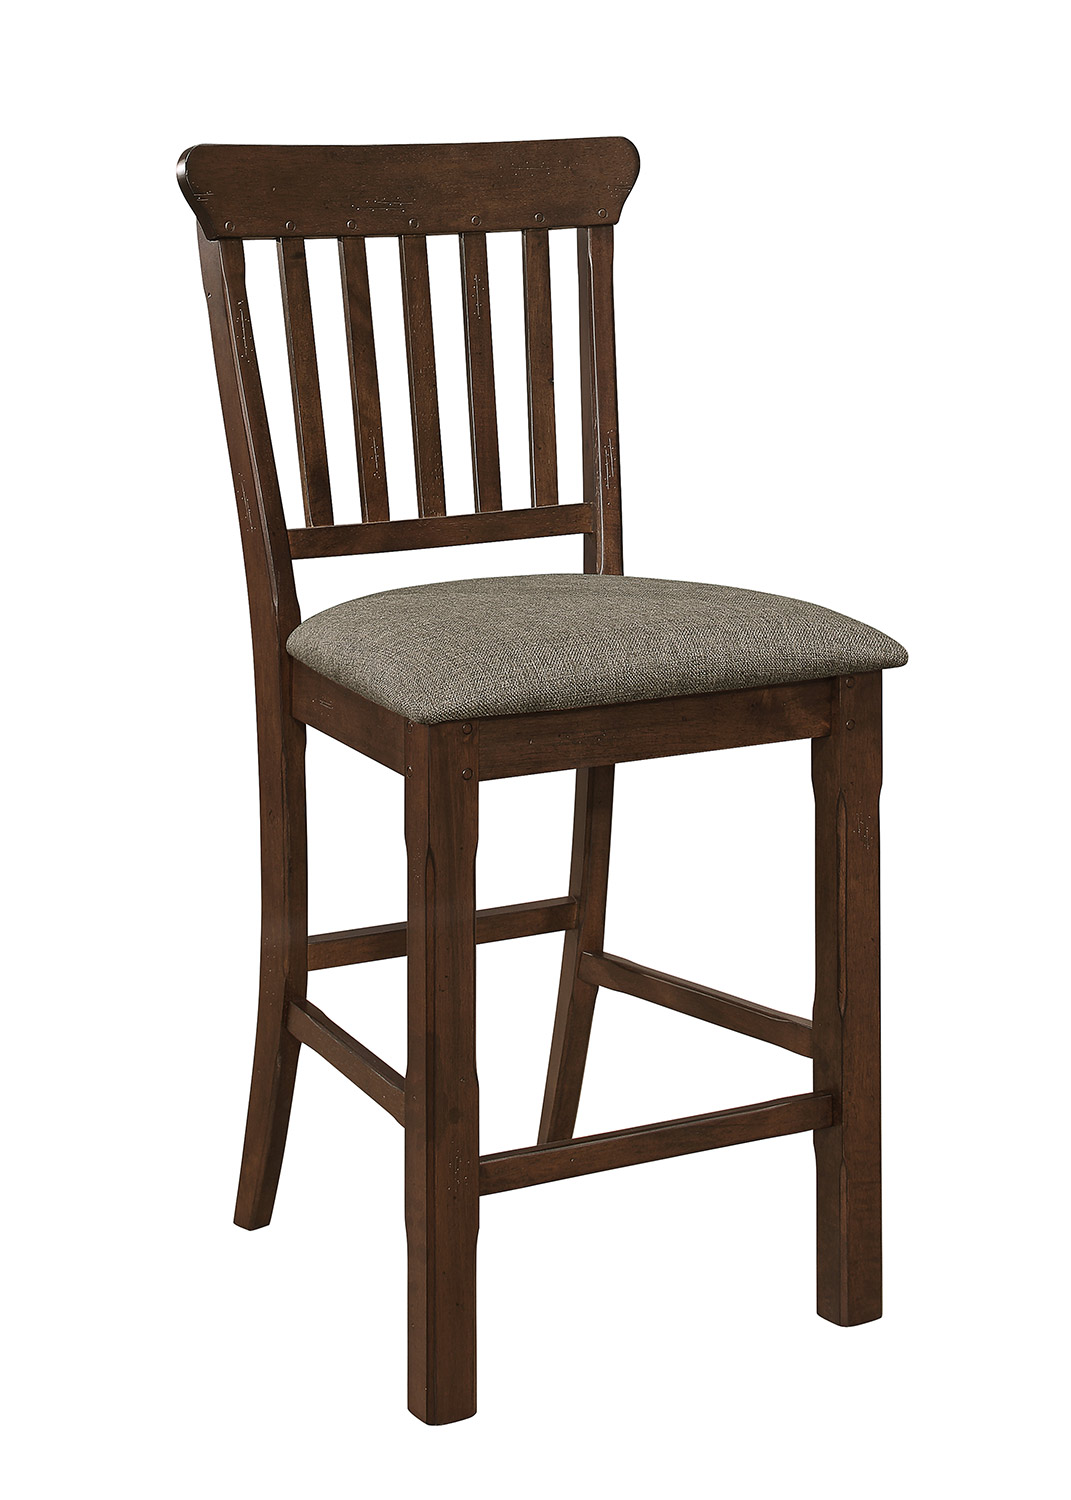 Homelegance Schleiger Counter Height Chair - Dark Brown